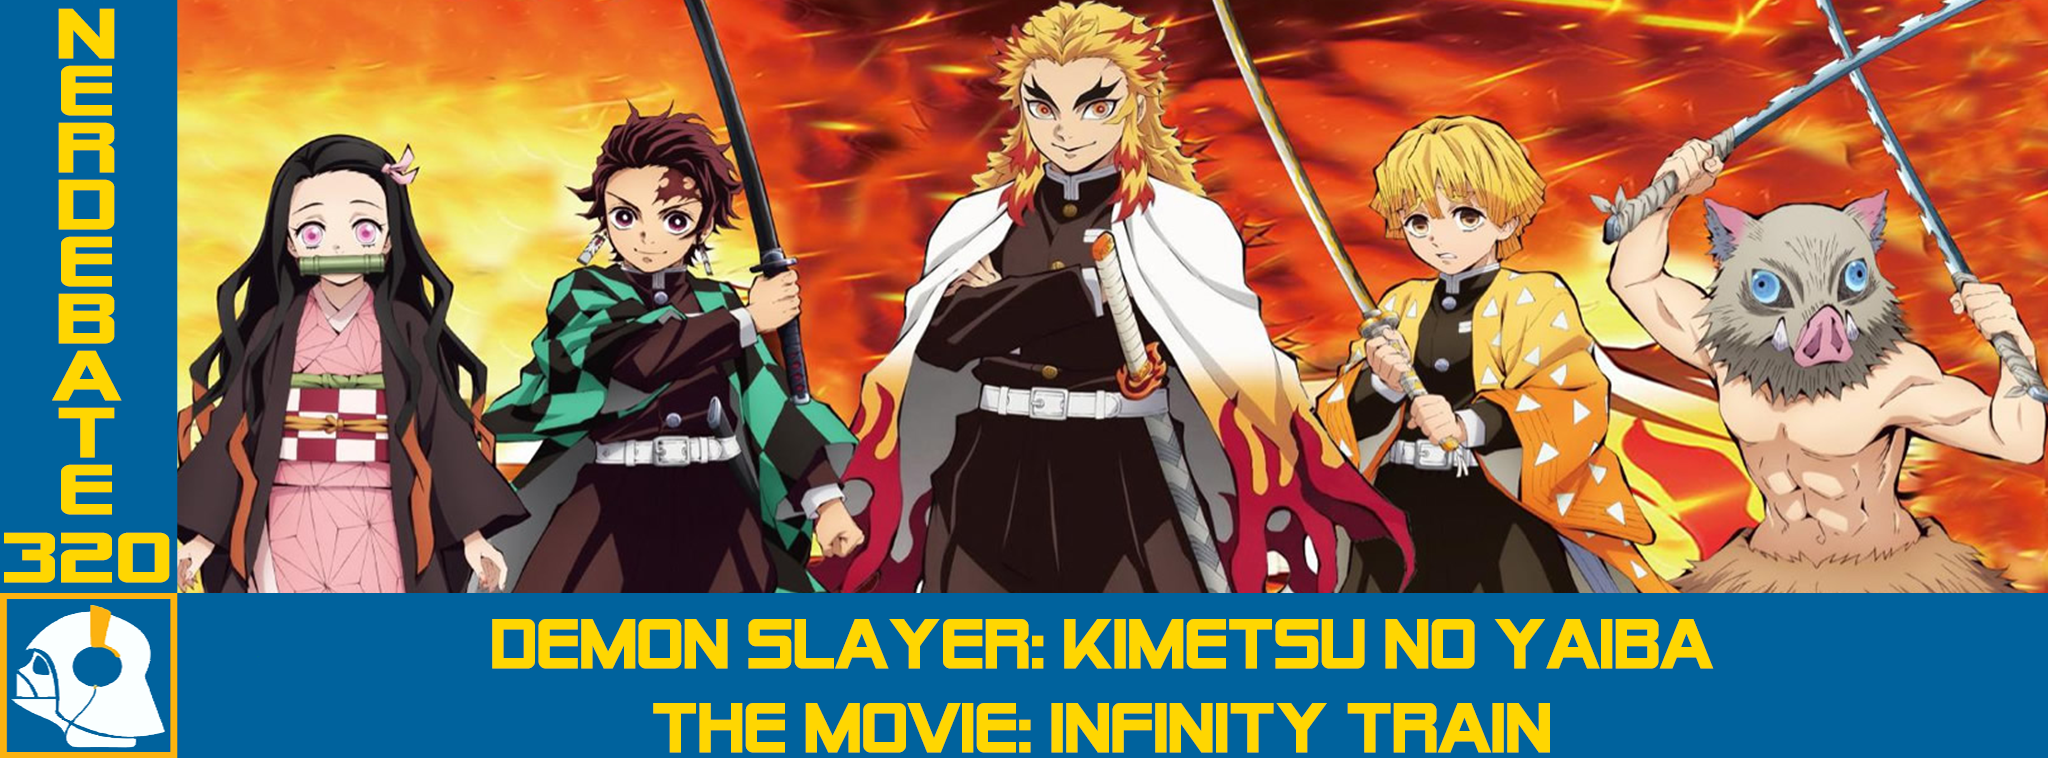 DEMON SLAYER FILME DUBLADO NA NETFLIX?! - Demon Slayer - Kimetsu no Yaiba -  The Movie: Mugen Train 